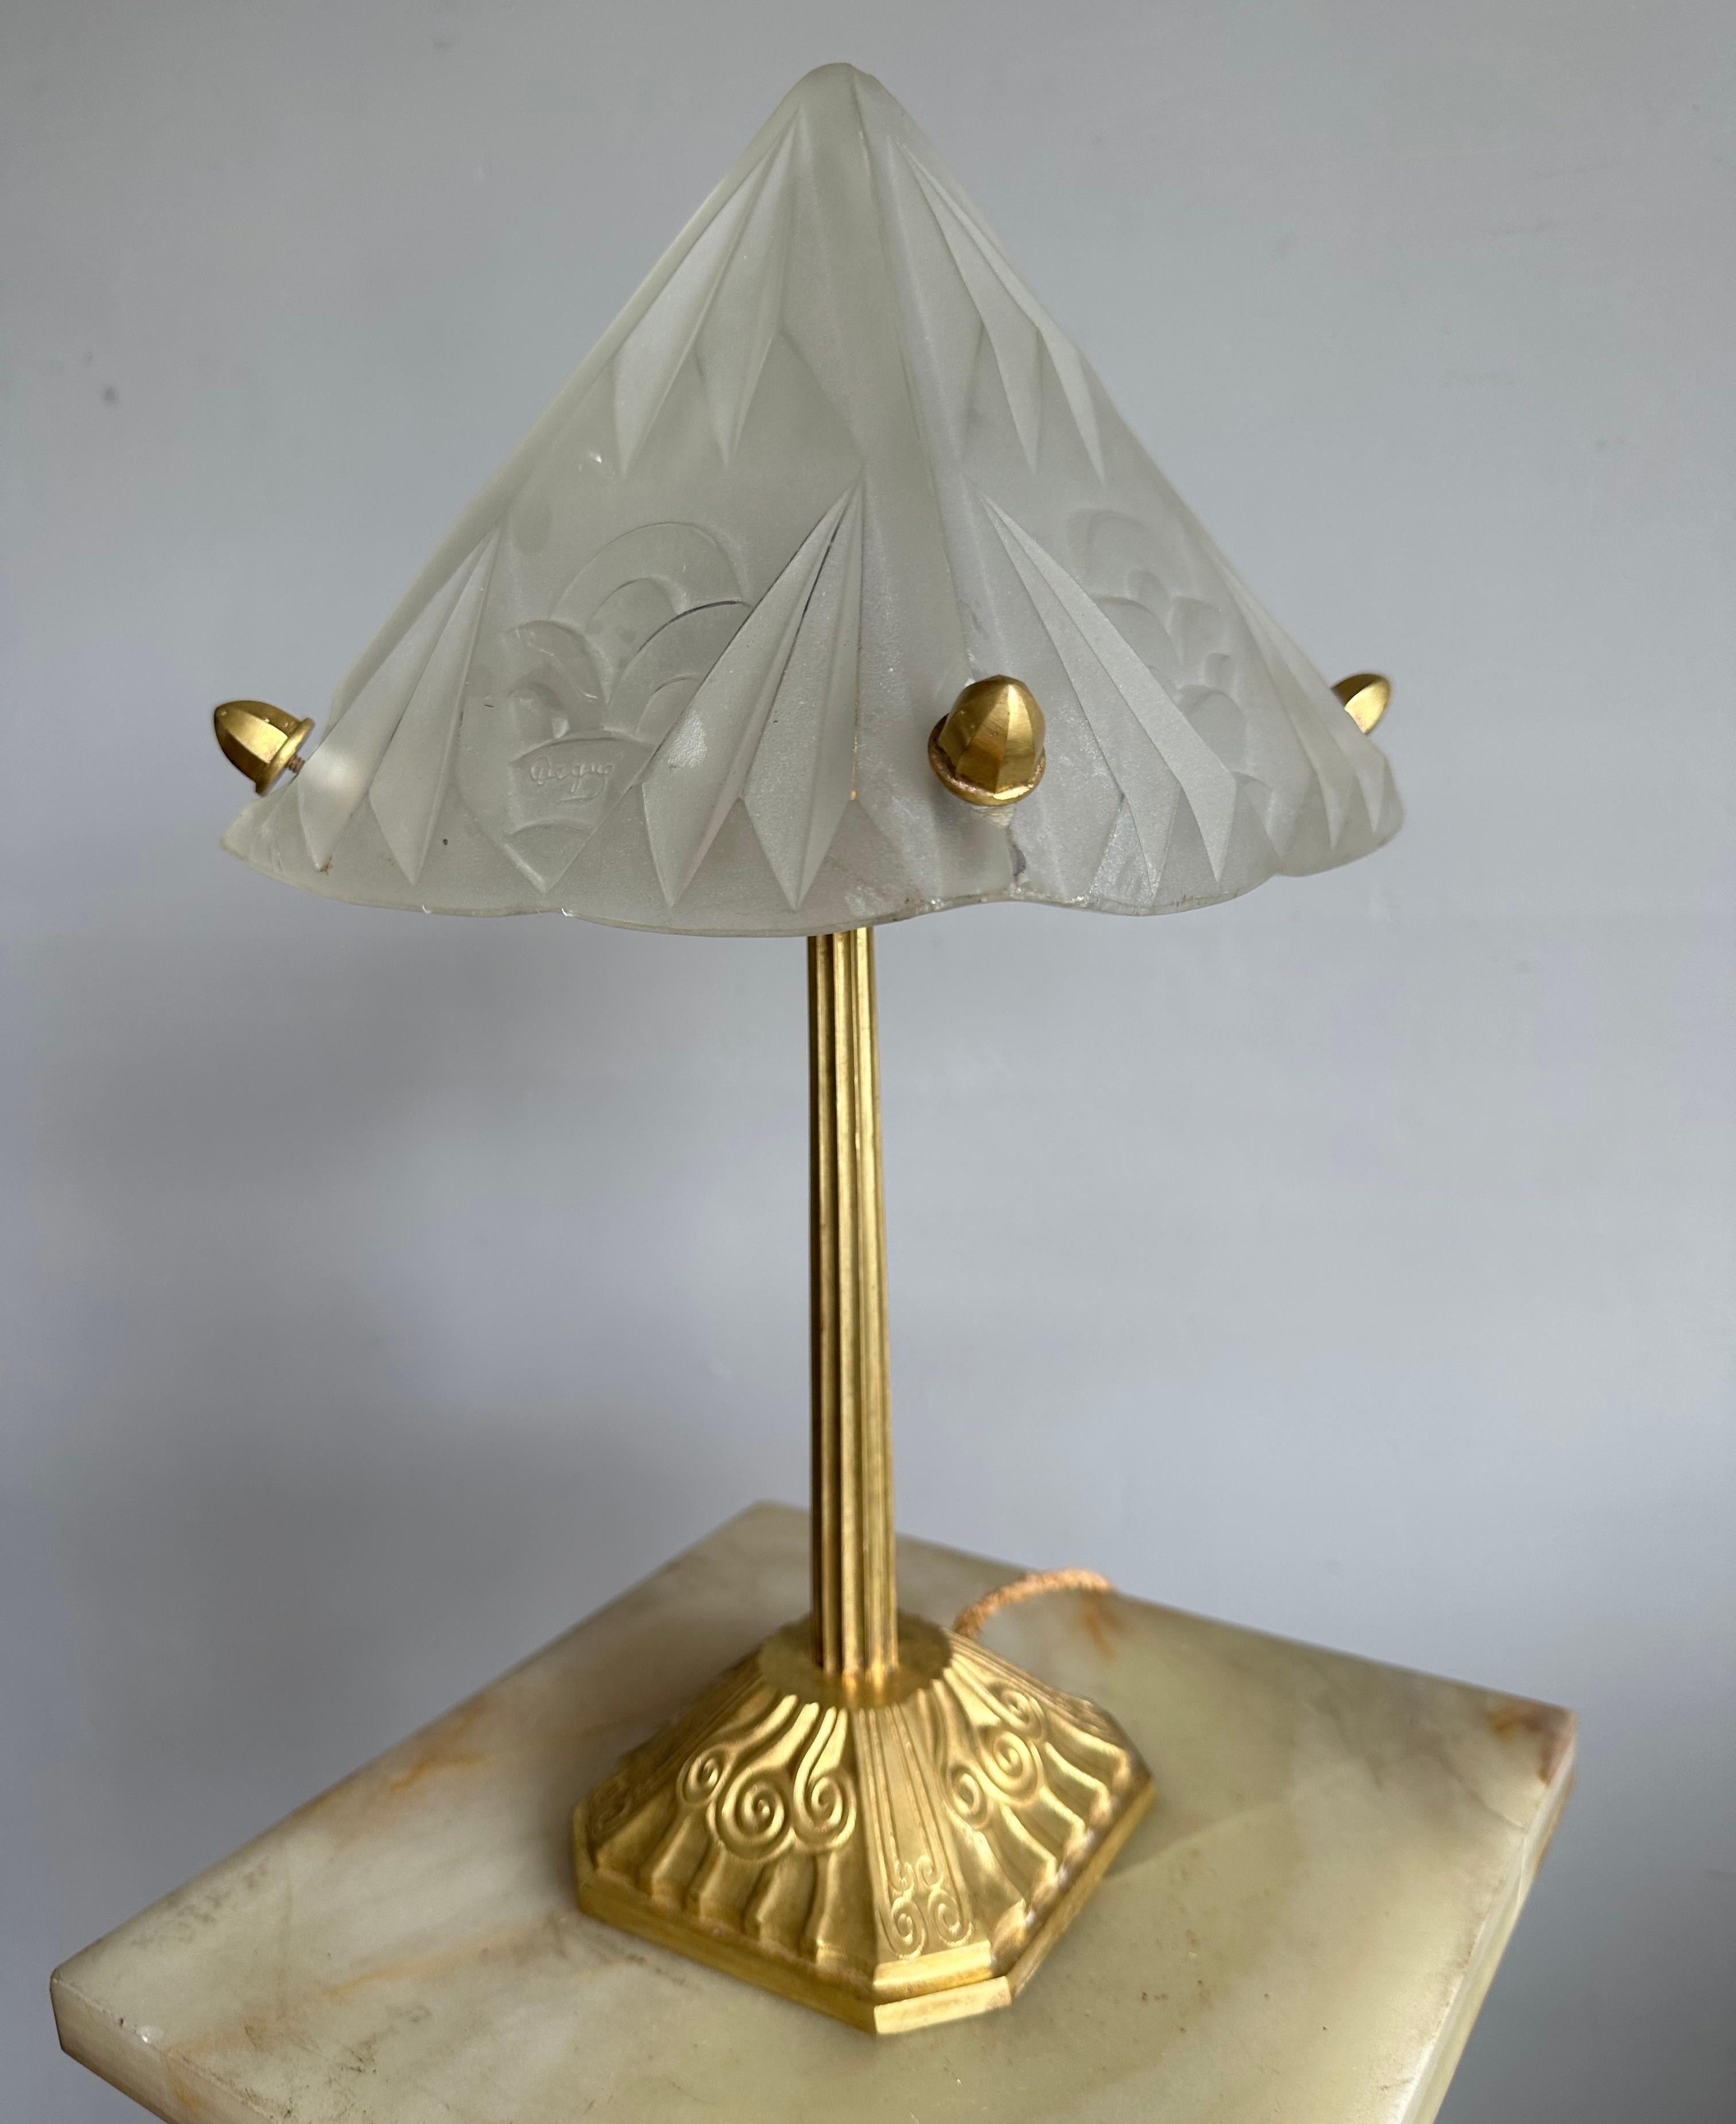 Wunderbar handgefertigte Tisch- oder Schreibtischlampe von 1920/1930 für das perfekte Ambiente.

Diese seltene und hochwertige Art-Déco-Tischlampe wurde um 1920/1930 von dem berühmten Glasstudio Degue in Frankreich hergestellt. Er verfügt über einen